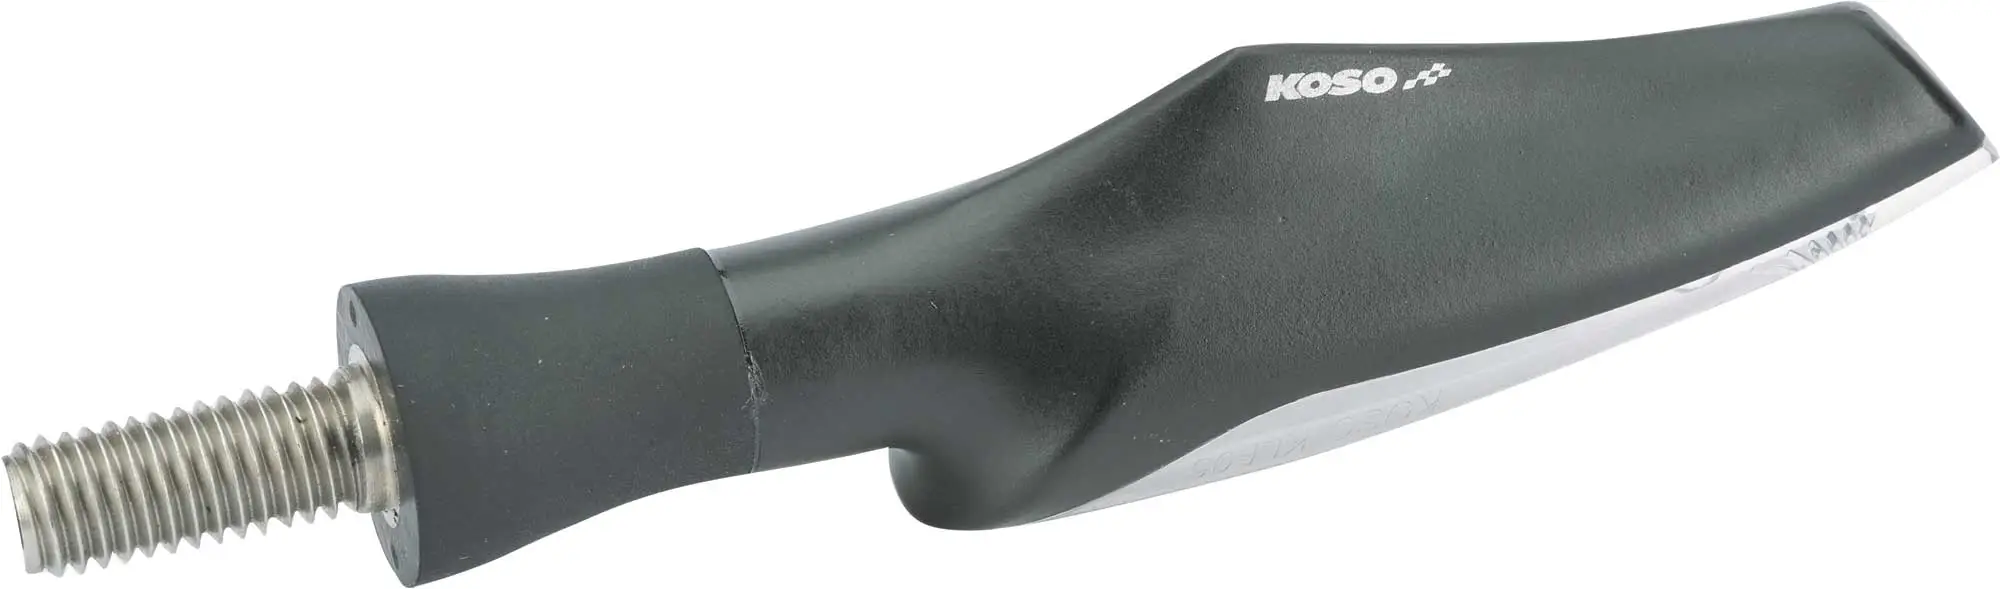 KOSO Motorrad Blinker E geprüft LED Blinker Metall M8 schwarz, klares Glas